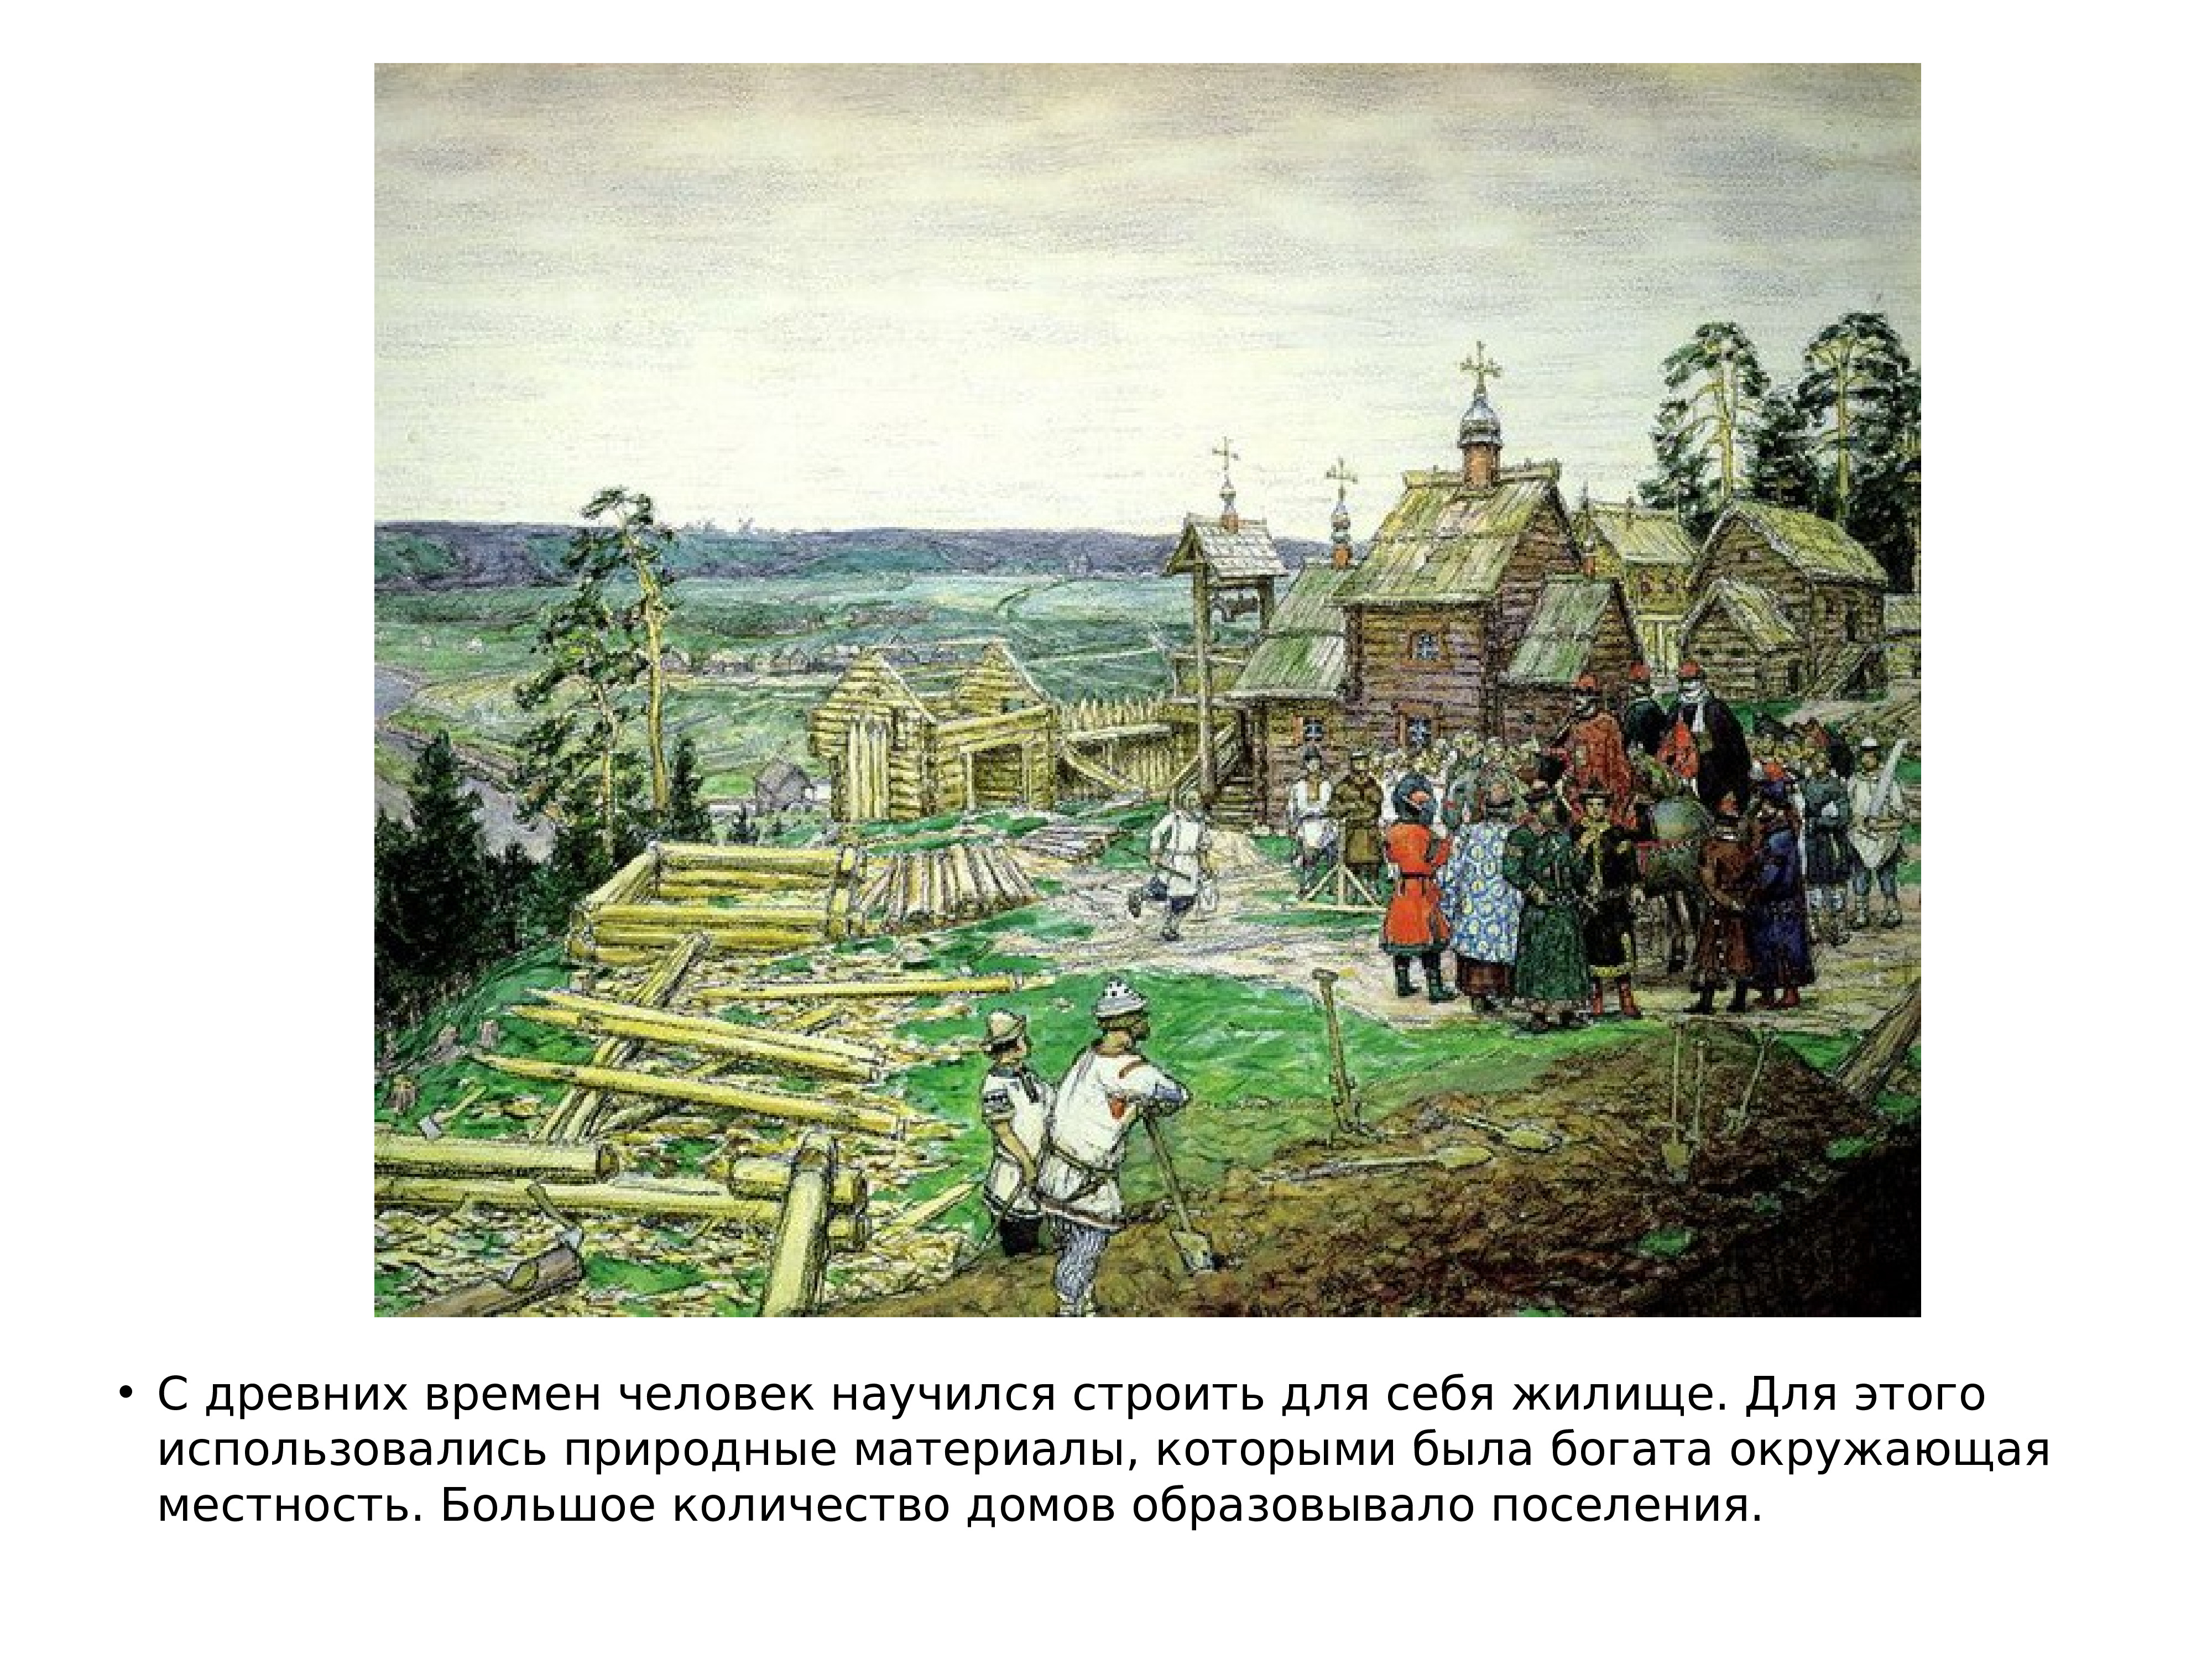 Москва образована в году. Основание Москвы 1147 Юрием Долгоруким. 1147 Год основание Москвы. Год основания Москвы. Дата основания Москвы 1147.